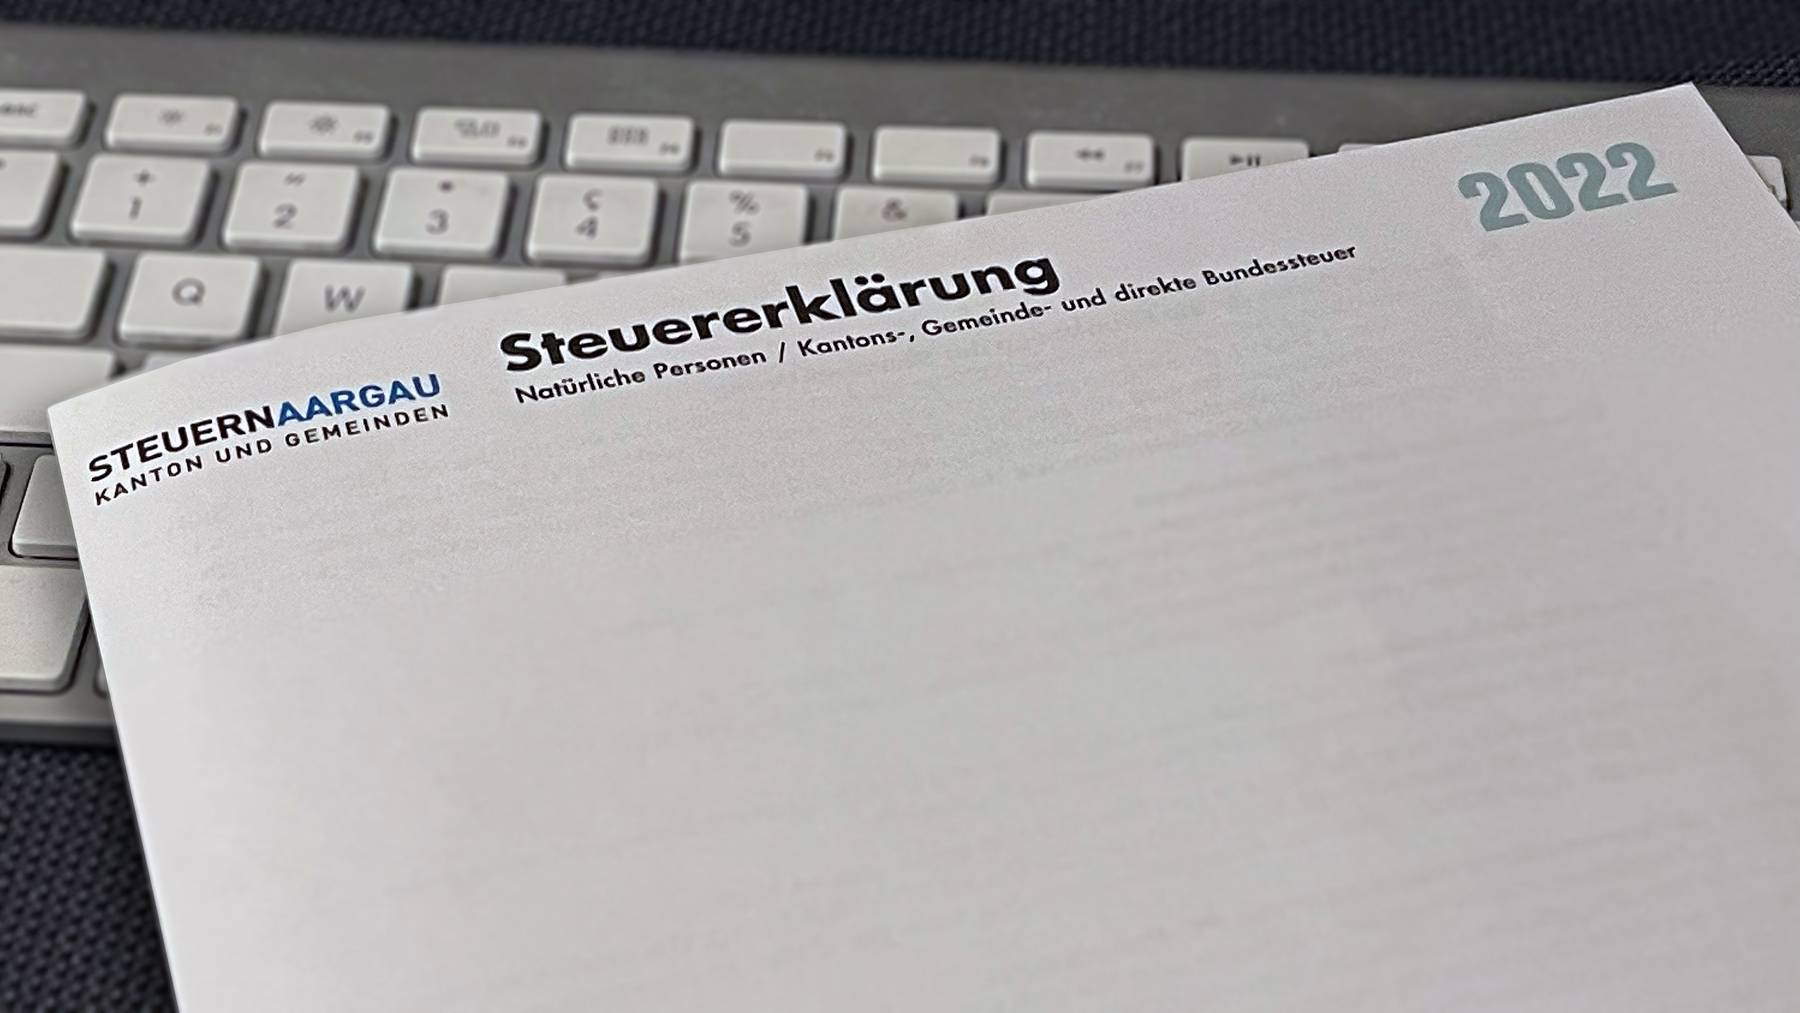 Steuererklärung Aargau 2022